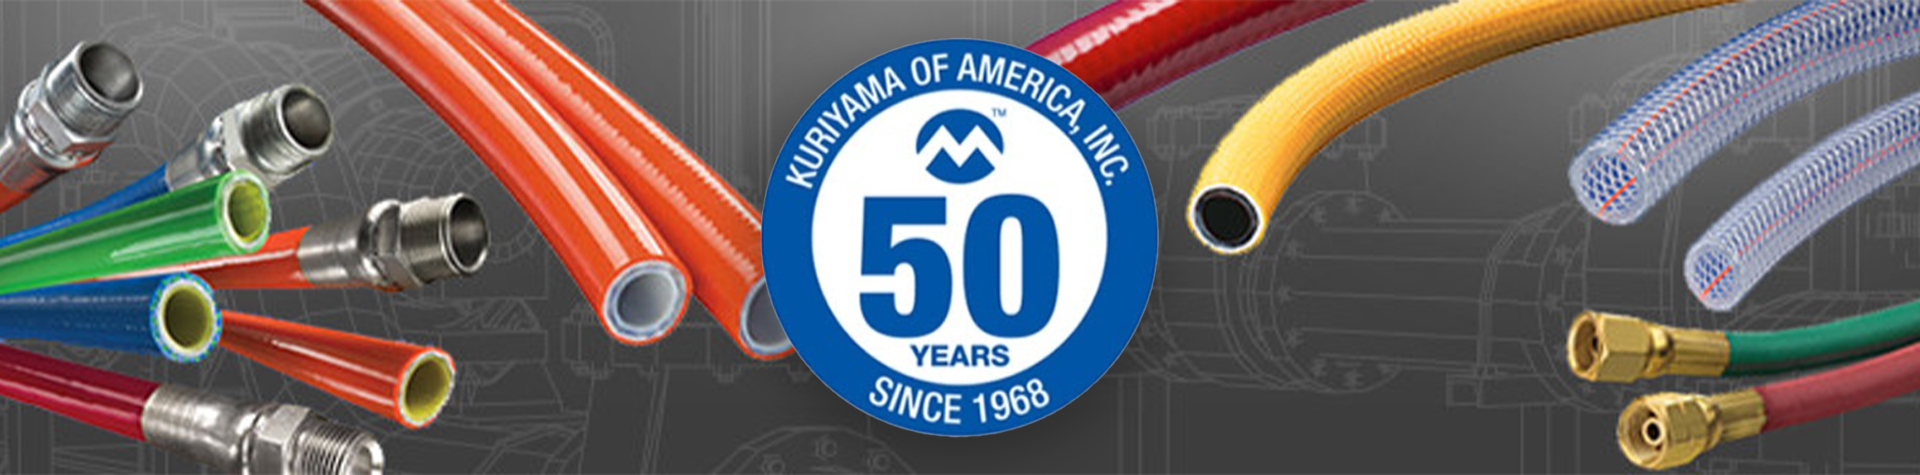 Kuriyama of America banner